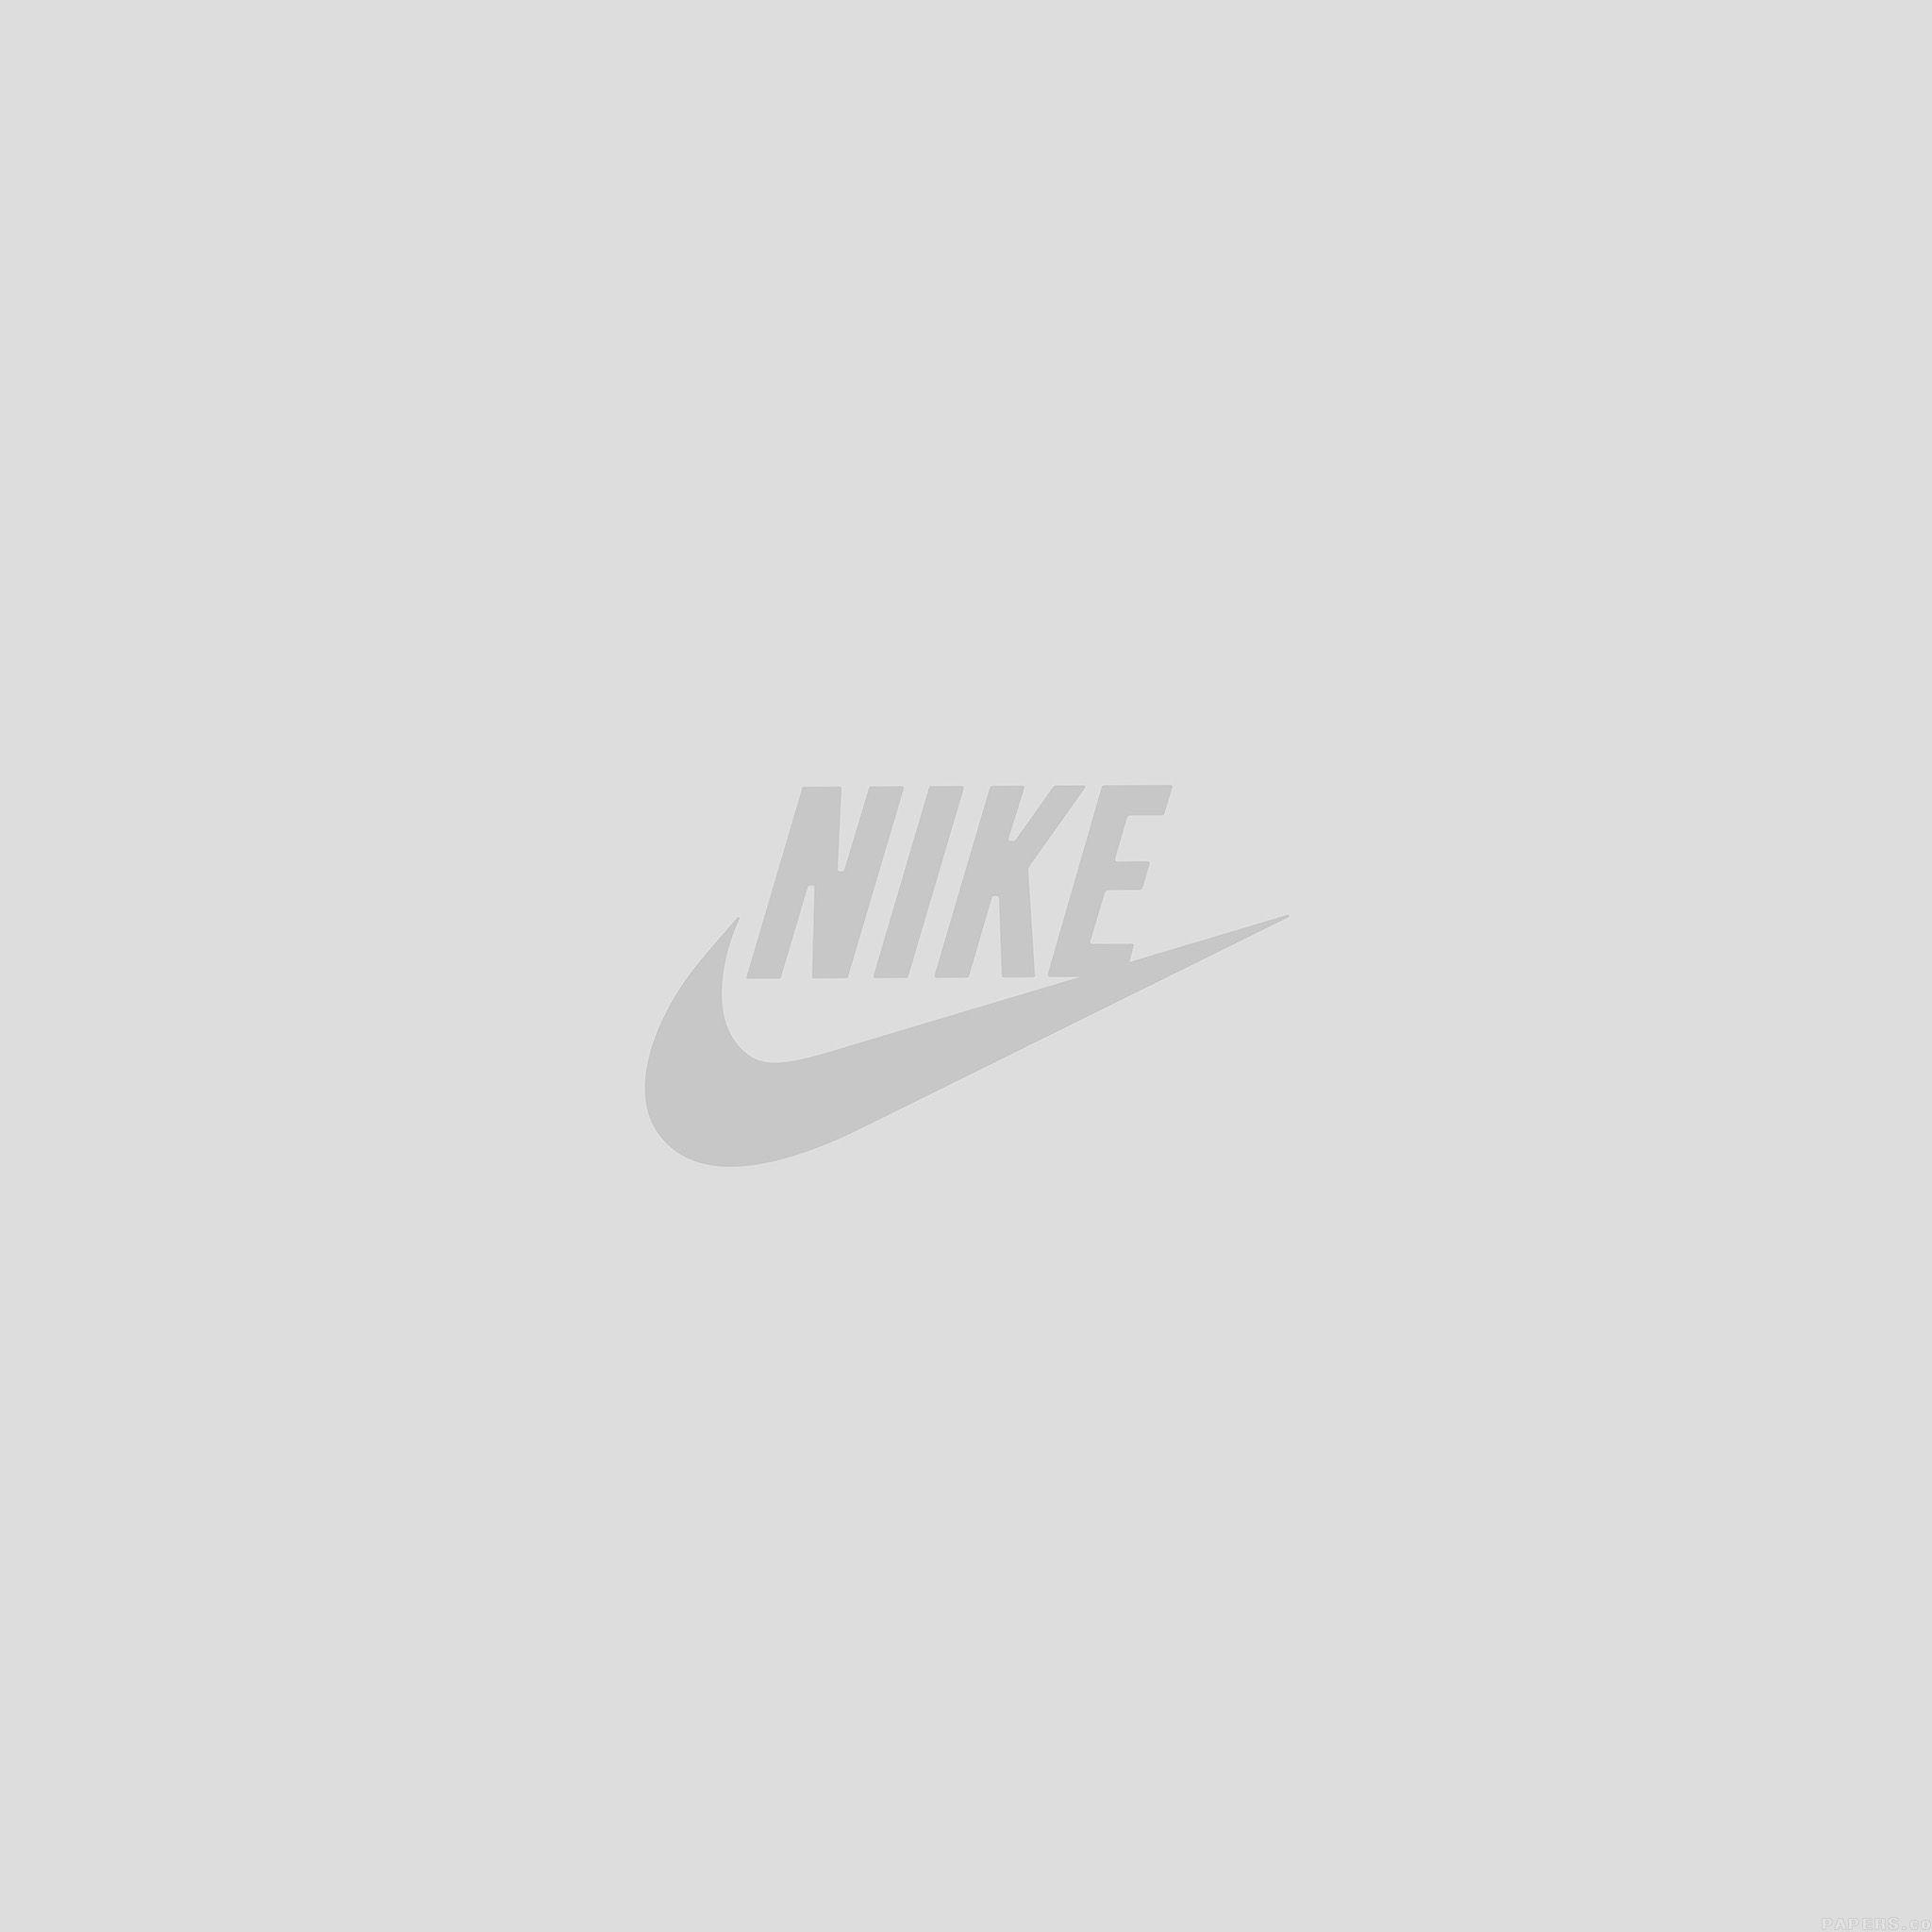 Nike Air Logo Wallpapers - Free Nike Logo WallpaperAccess